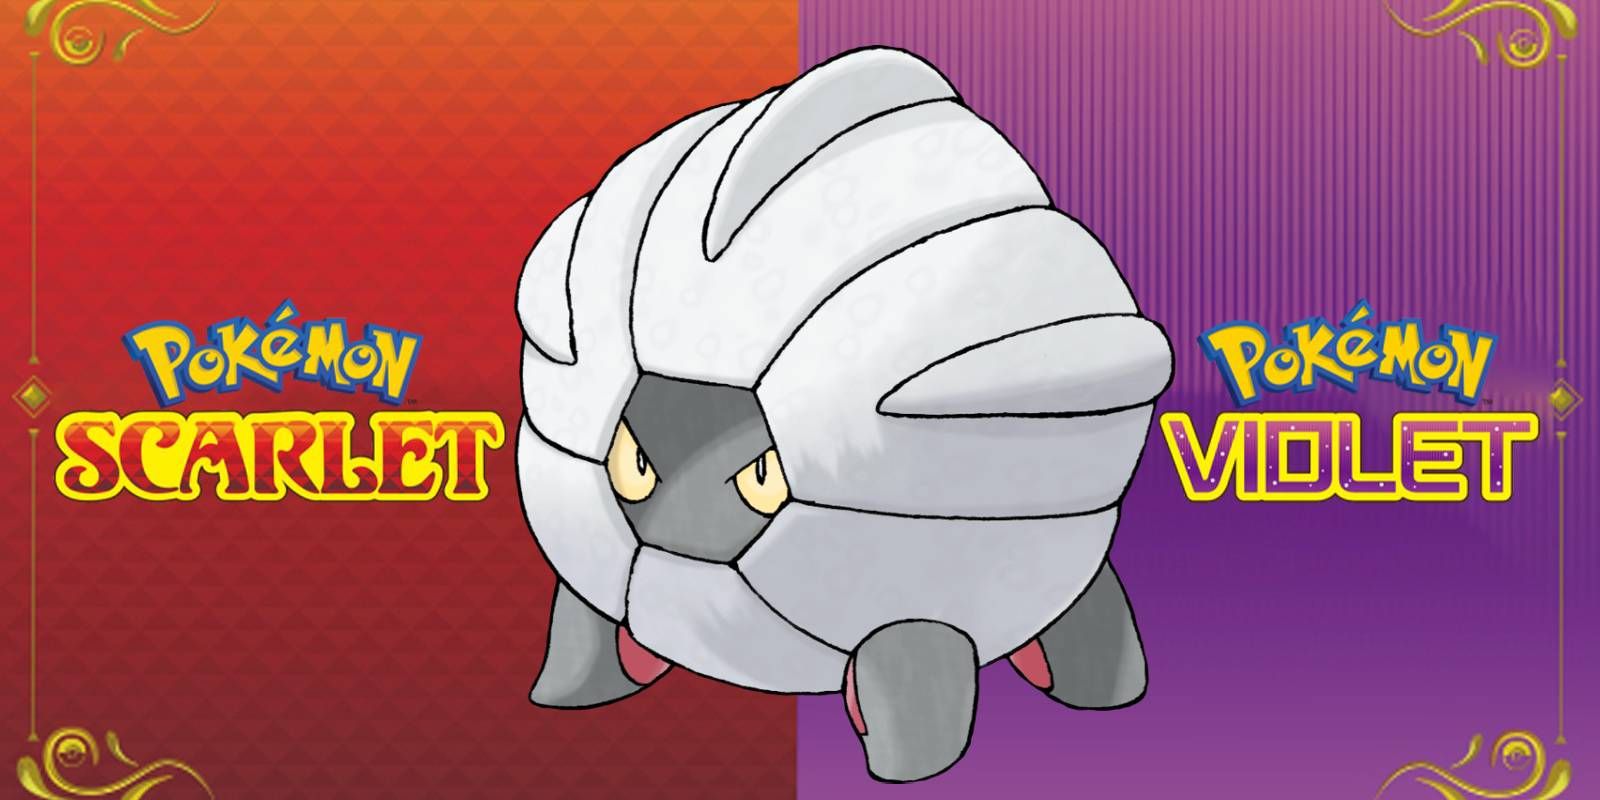 Pokémon Scarlet y Violet Shelgon junto a los logotipos de ambos juegos a pesar de ser exclusivos de Pokémon Violet